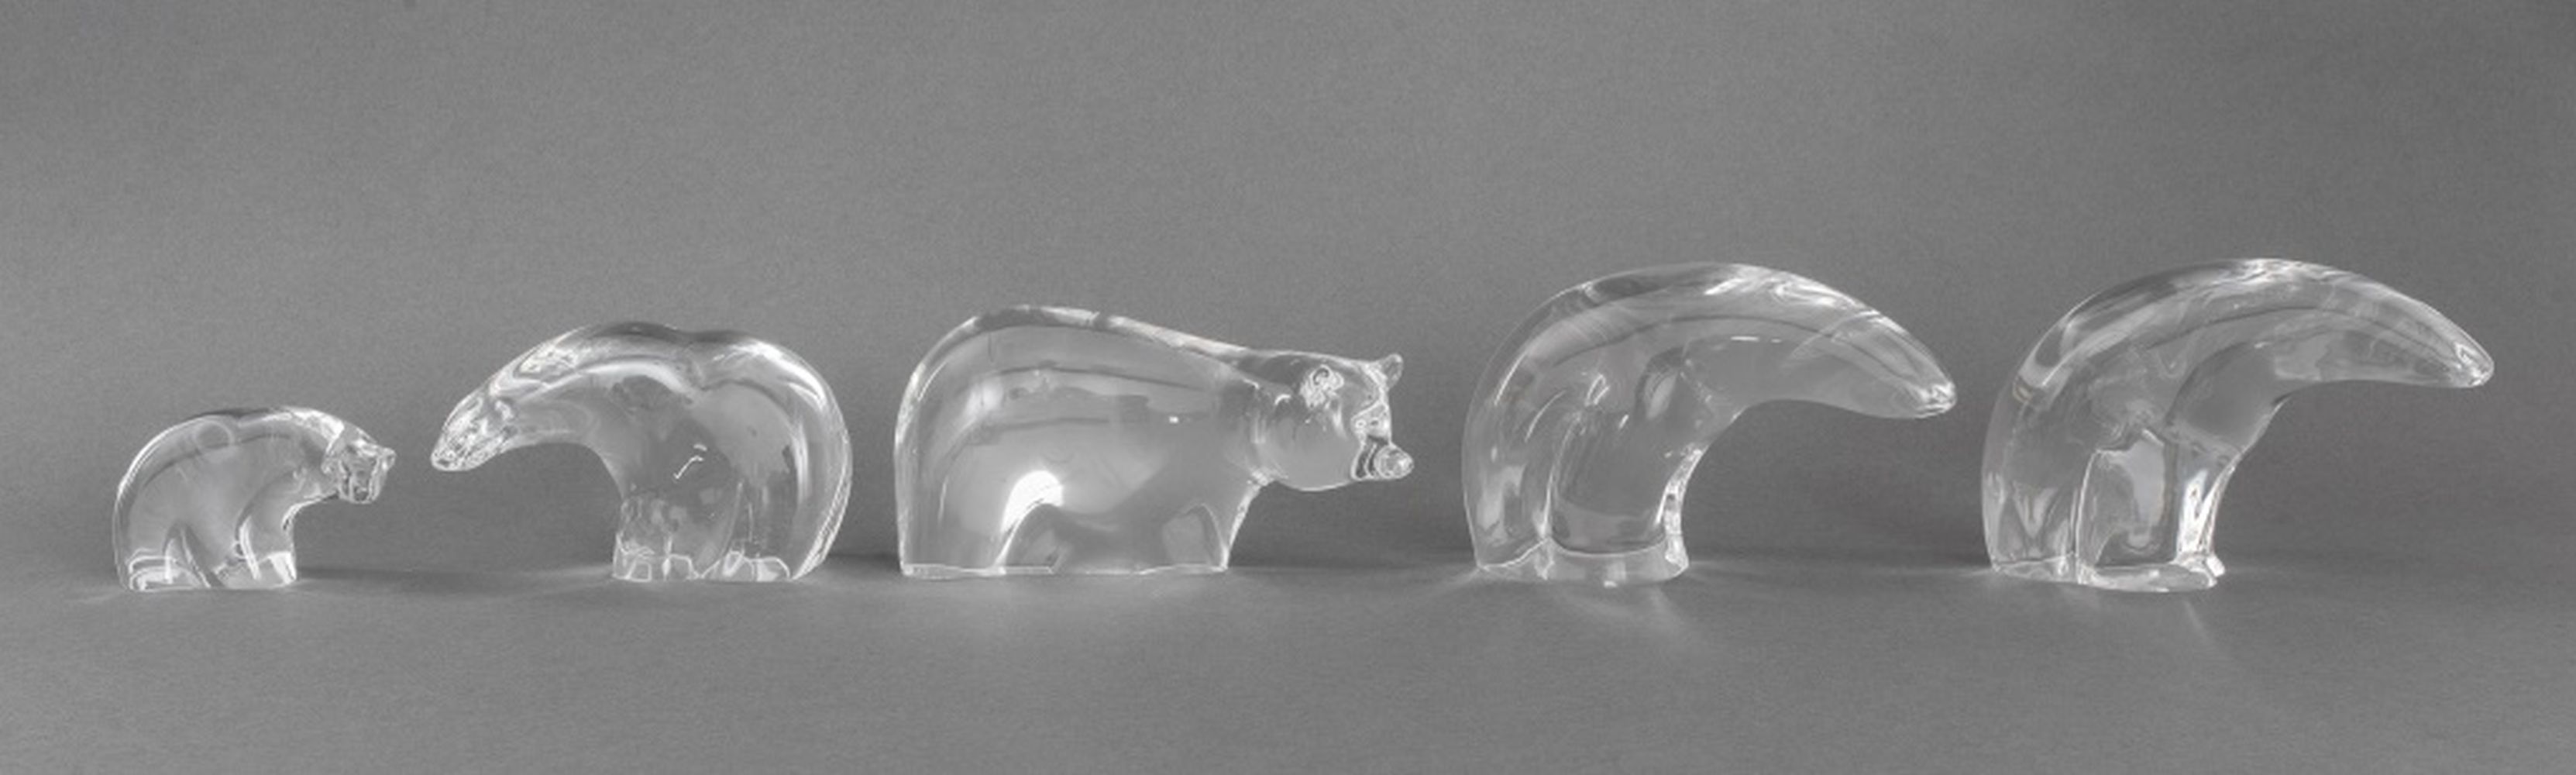 STEUBEN GLASS GROUP OF BEAR SCULPTURES  360135